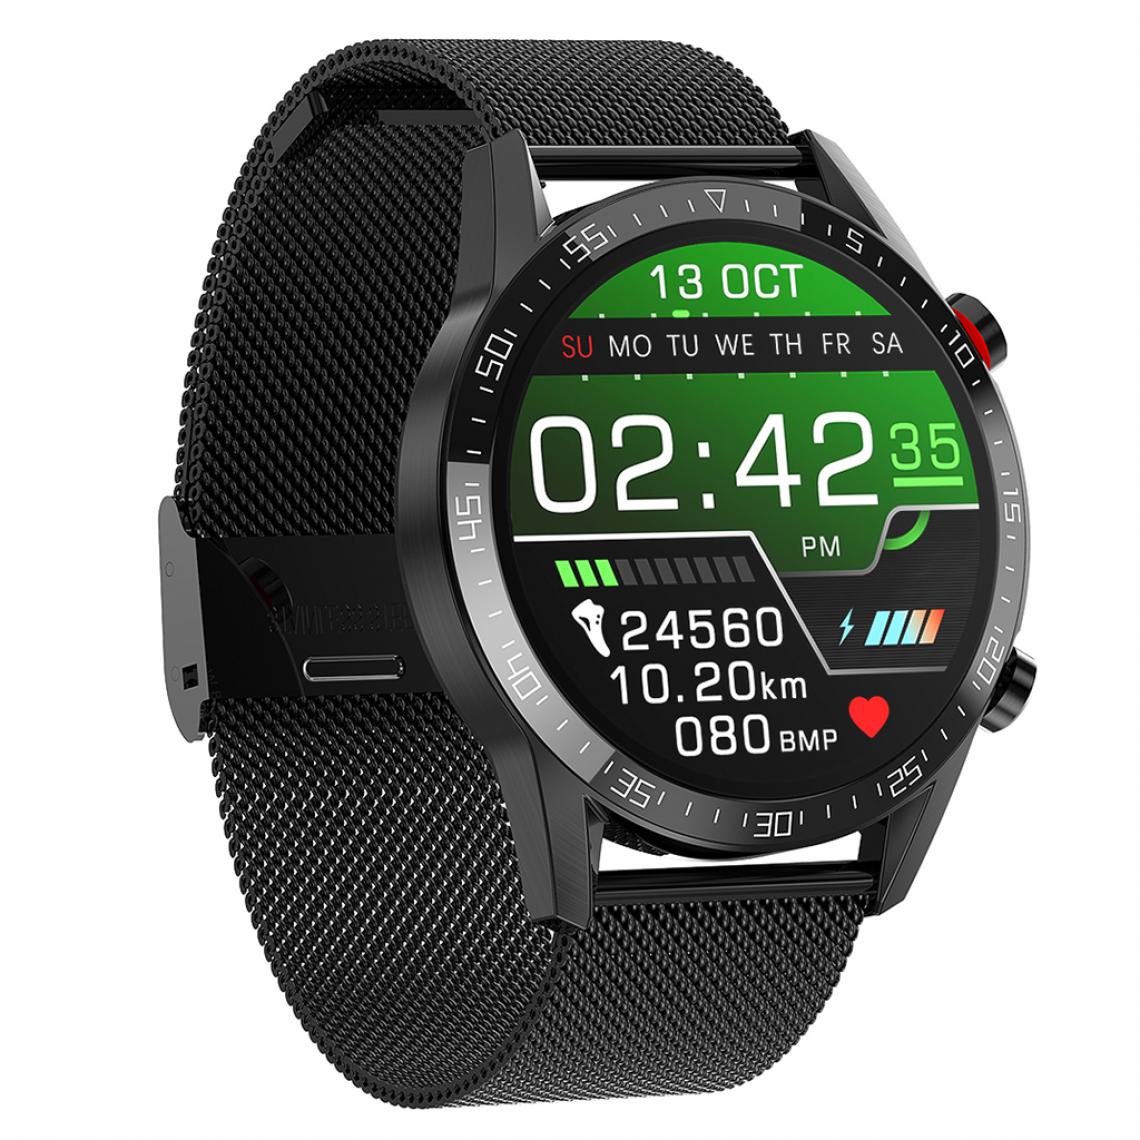 marque generique - L13 Smart Watch IP68 étanche ECG PPG Bluetooth Call Black Steel - Montre connectée